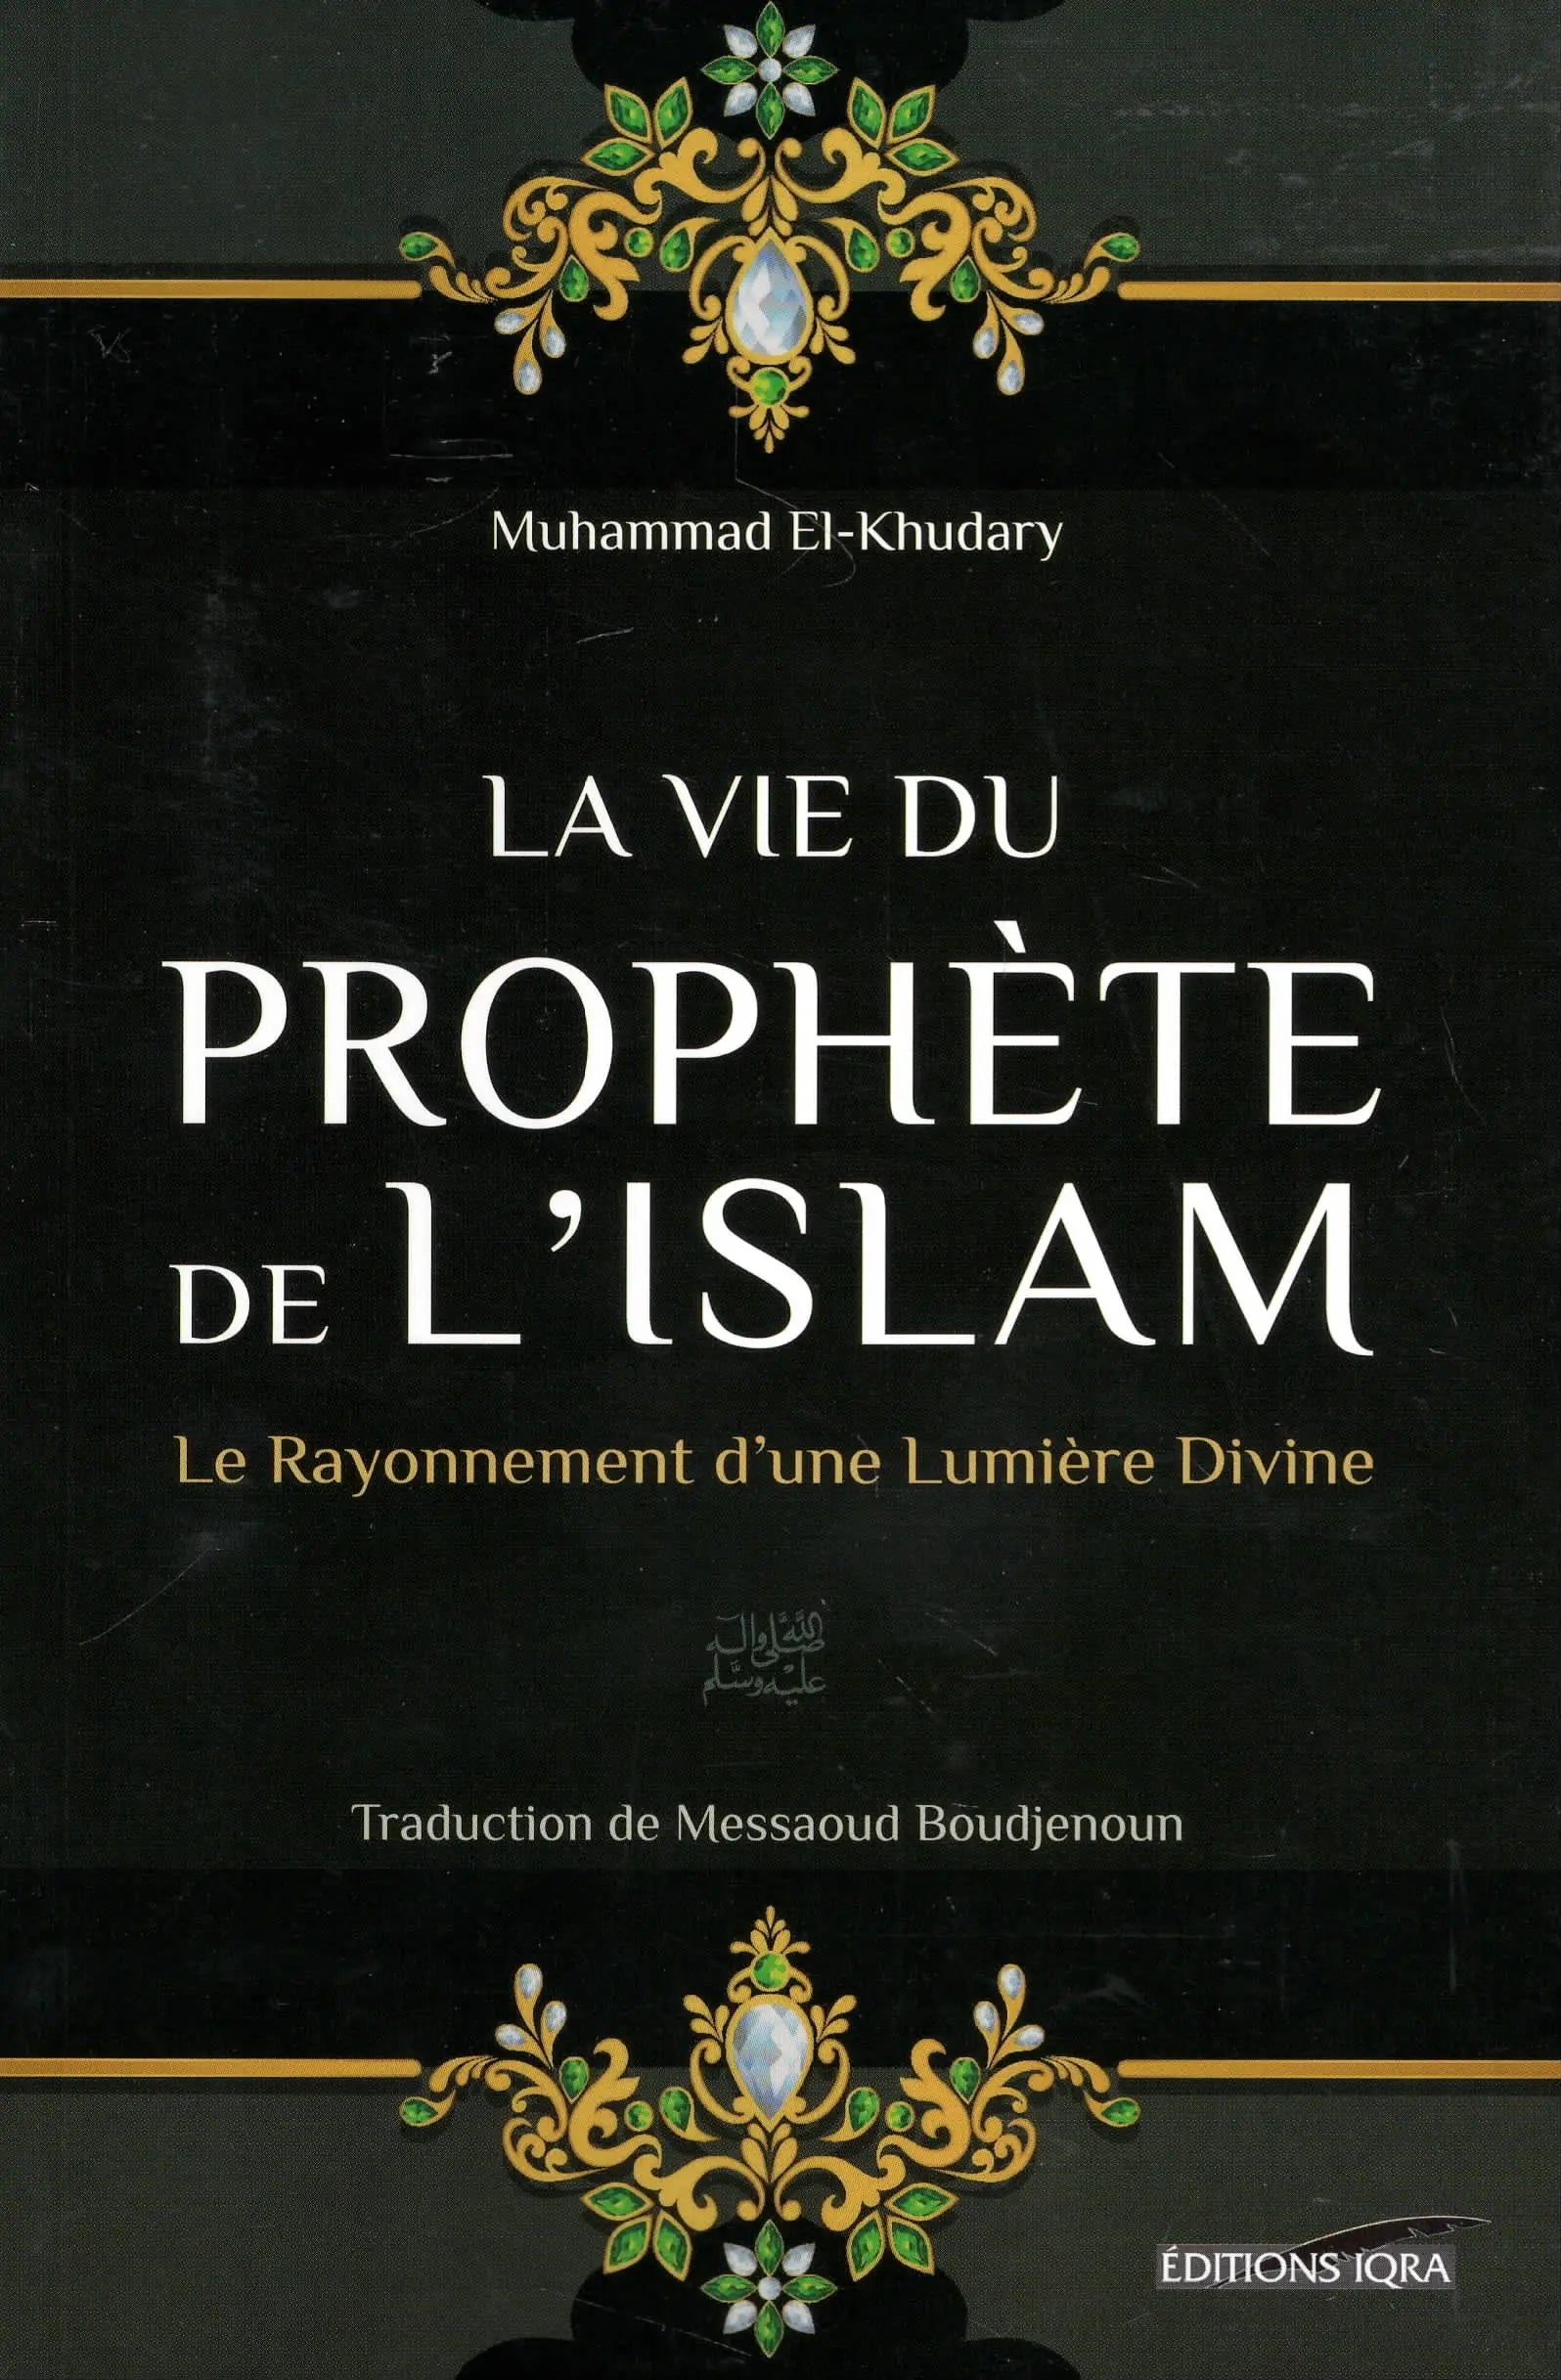 La vie du Prophète de l’Islam de Muhammad El-Khudary (Iqra)